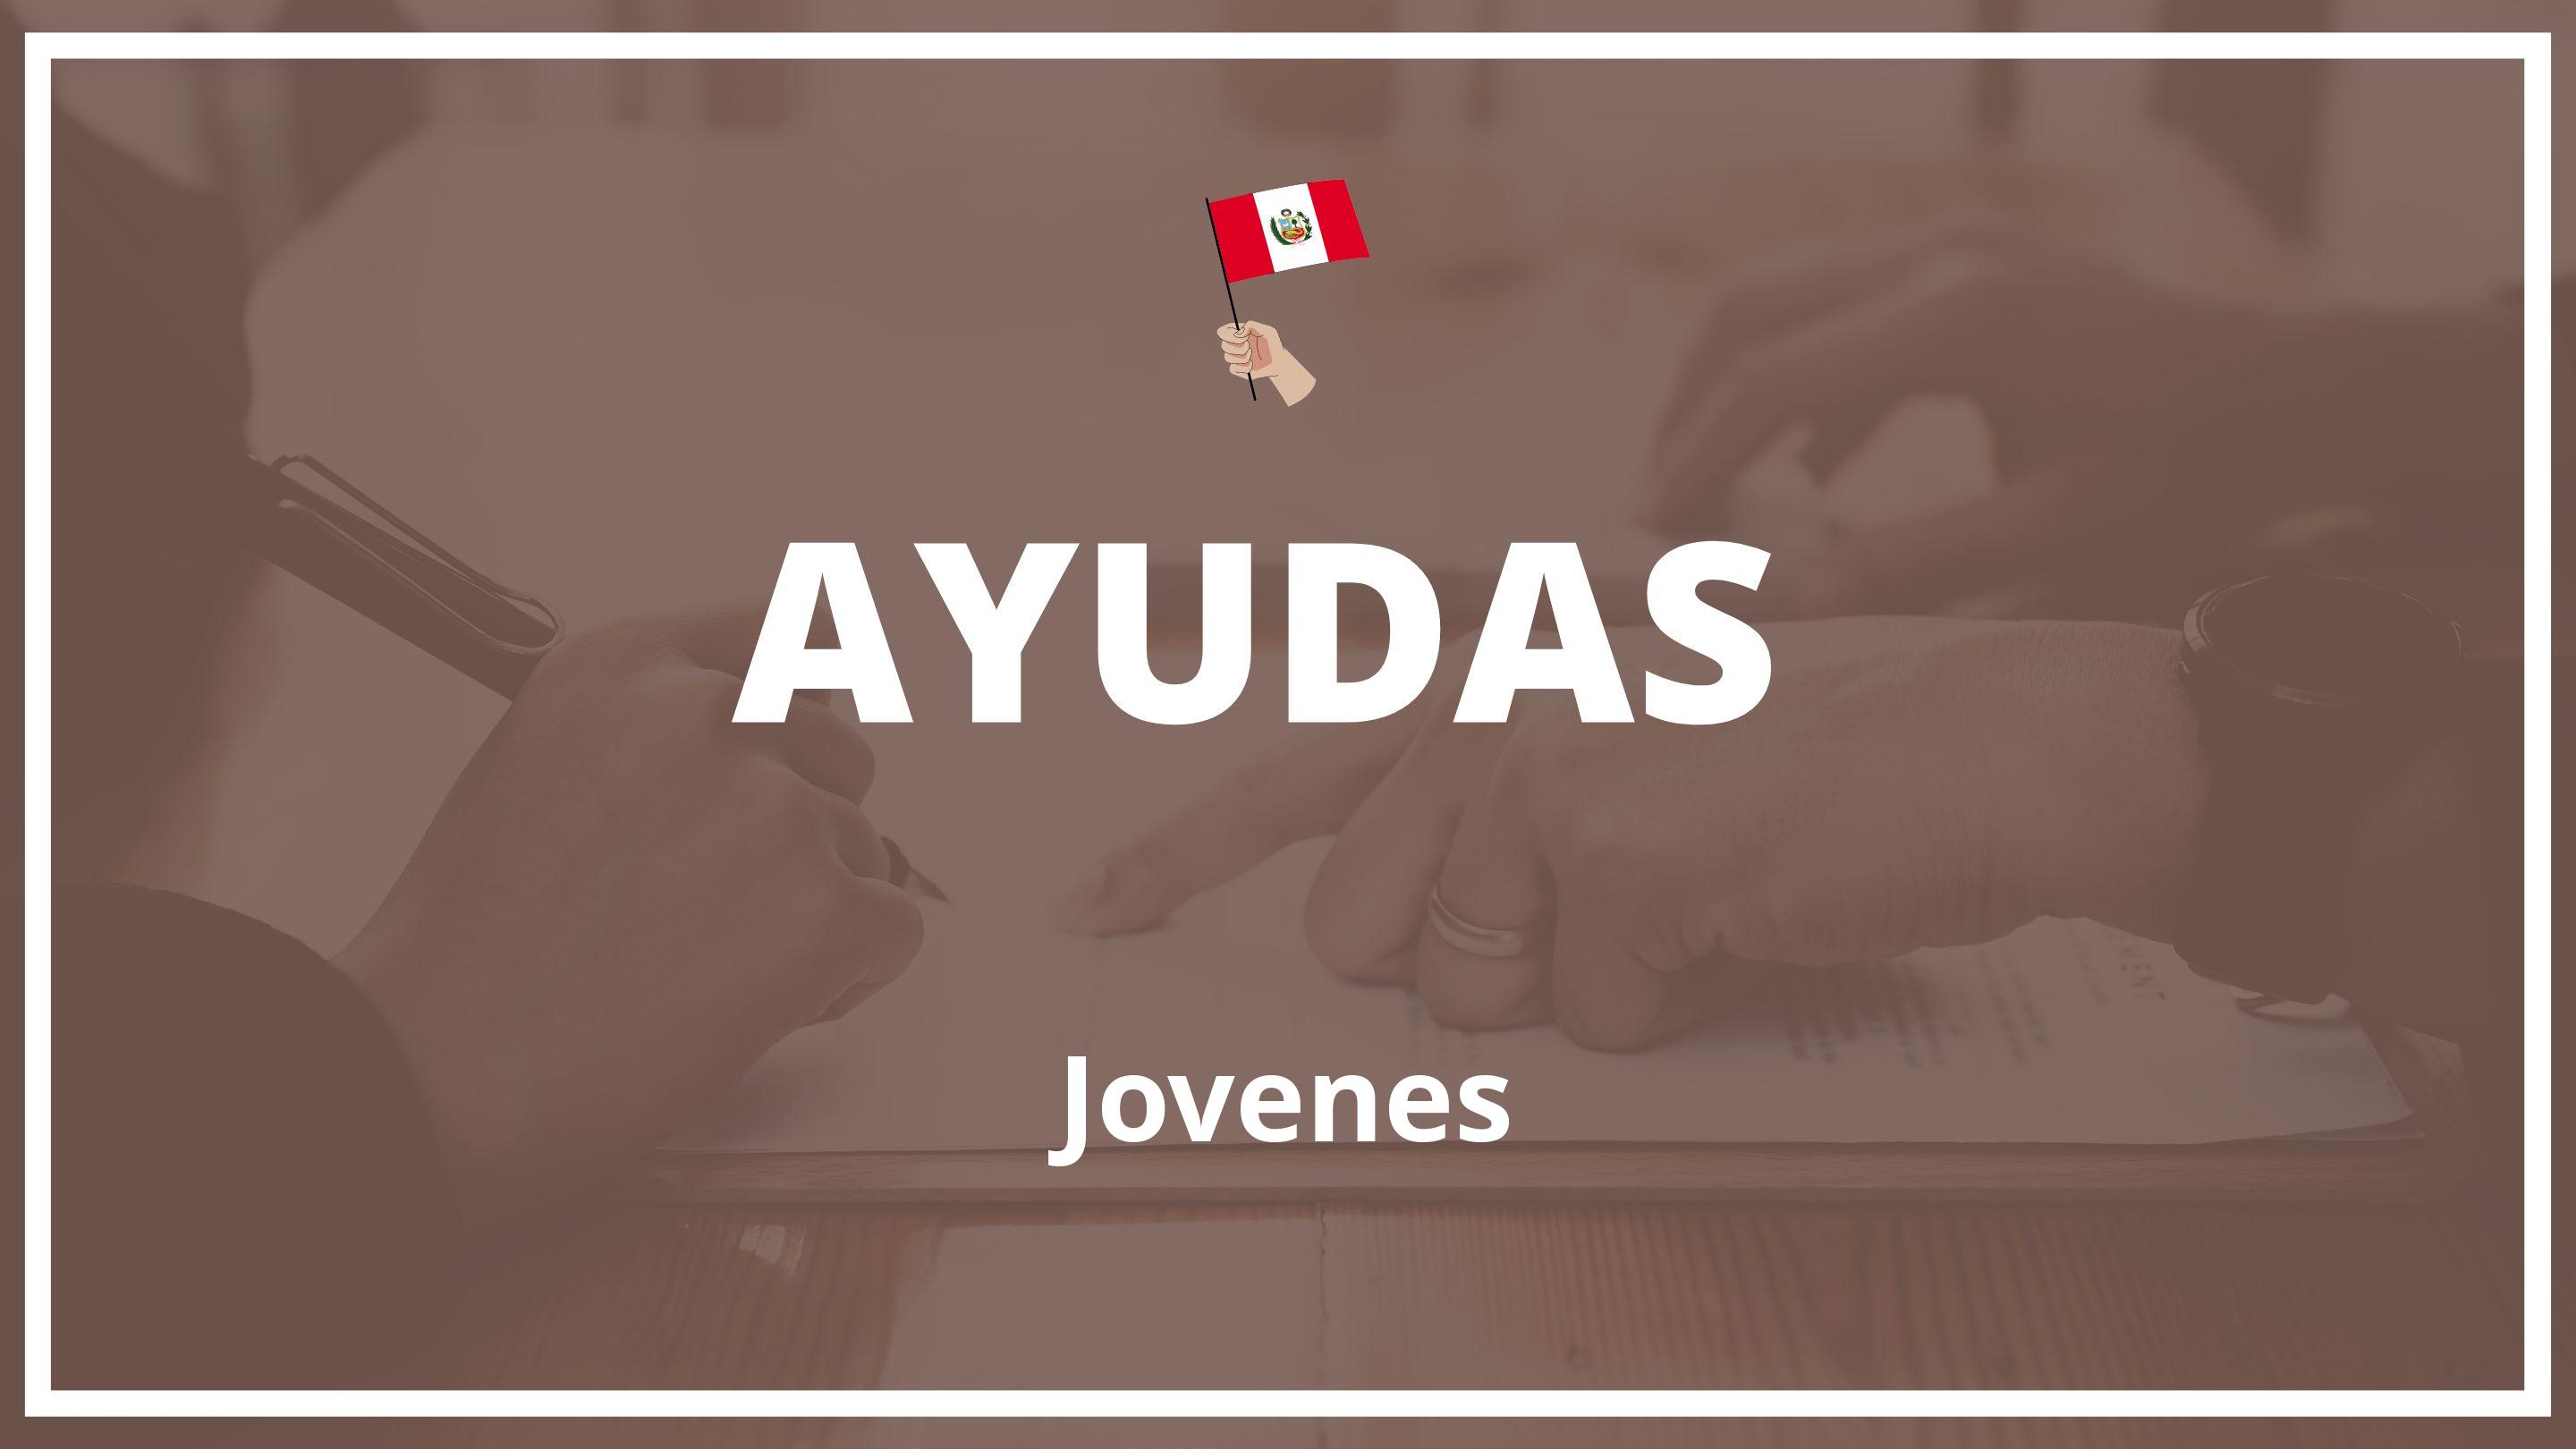 Ayudas para jovenes Peru